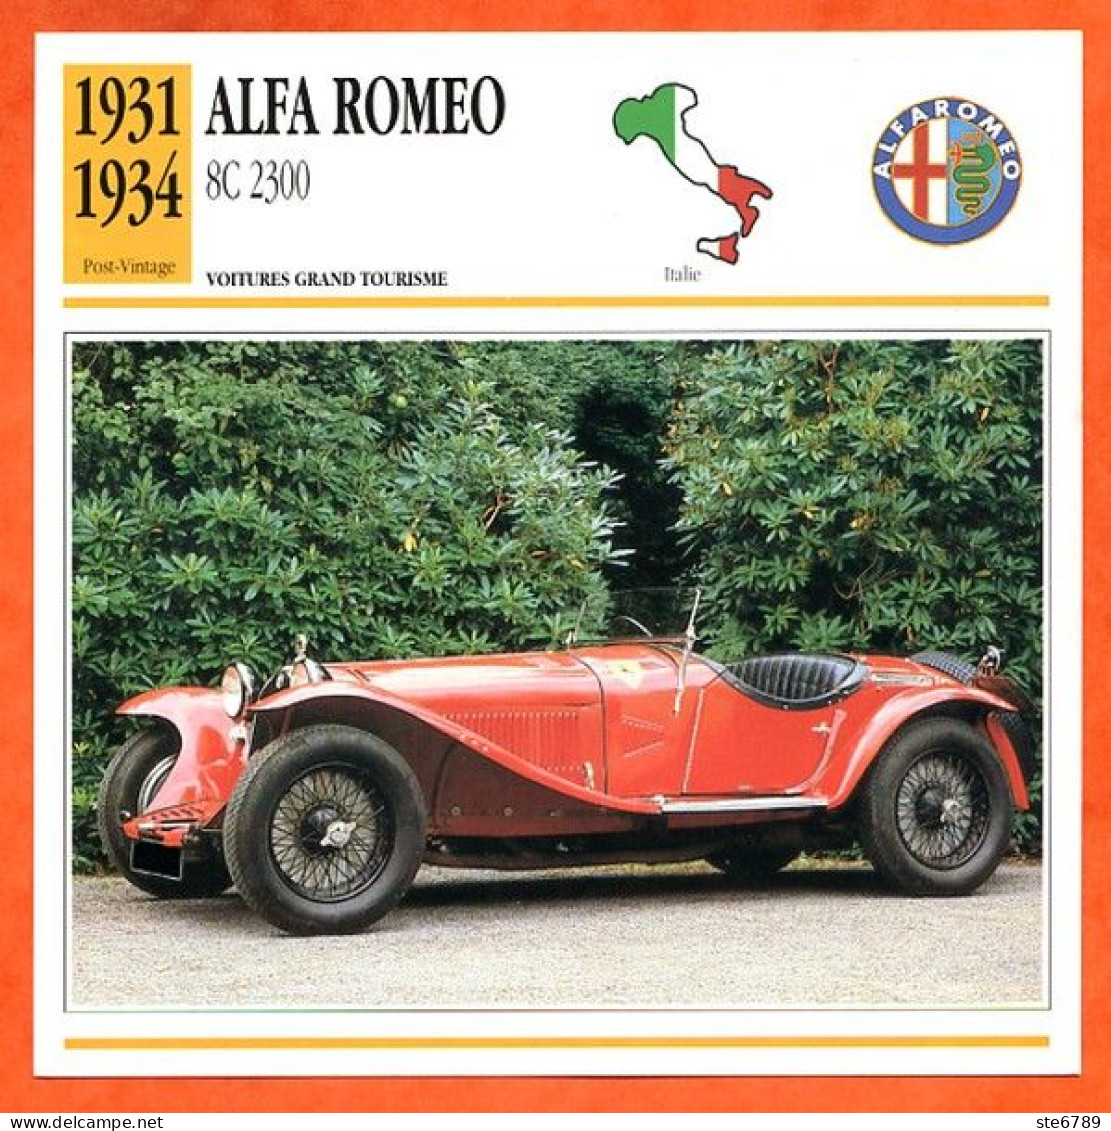 ALFA ROMEO 8C 2300 1931 Voiture Grand Tourisme Italie Fiche Technique Automobile - Cars